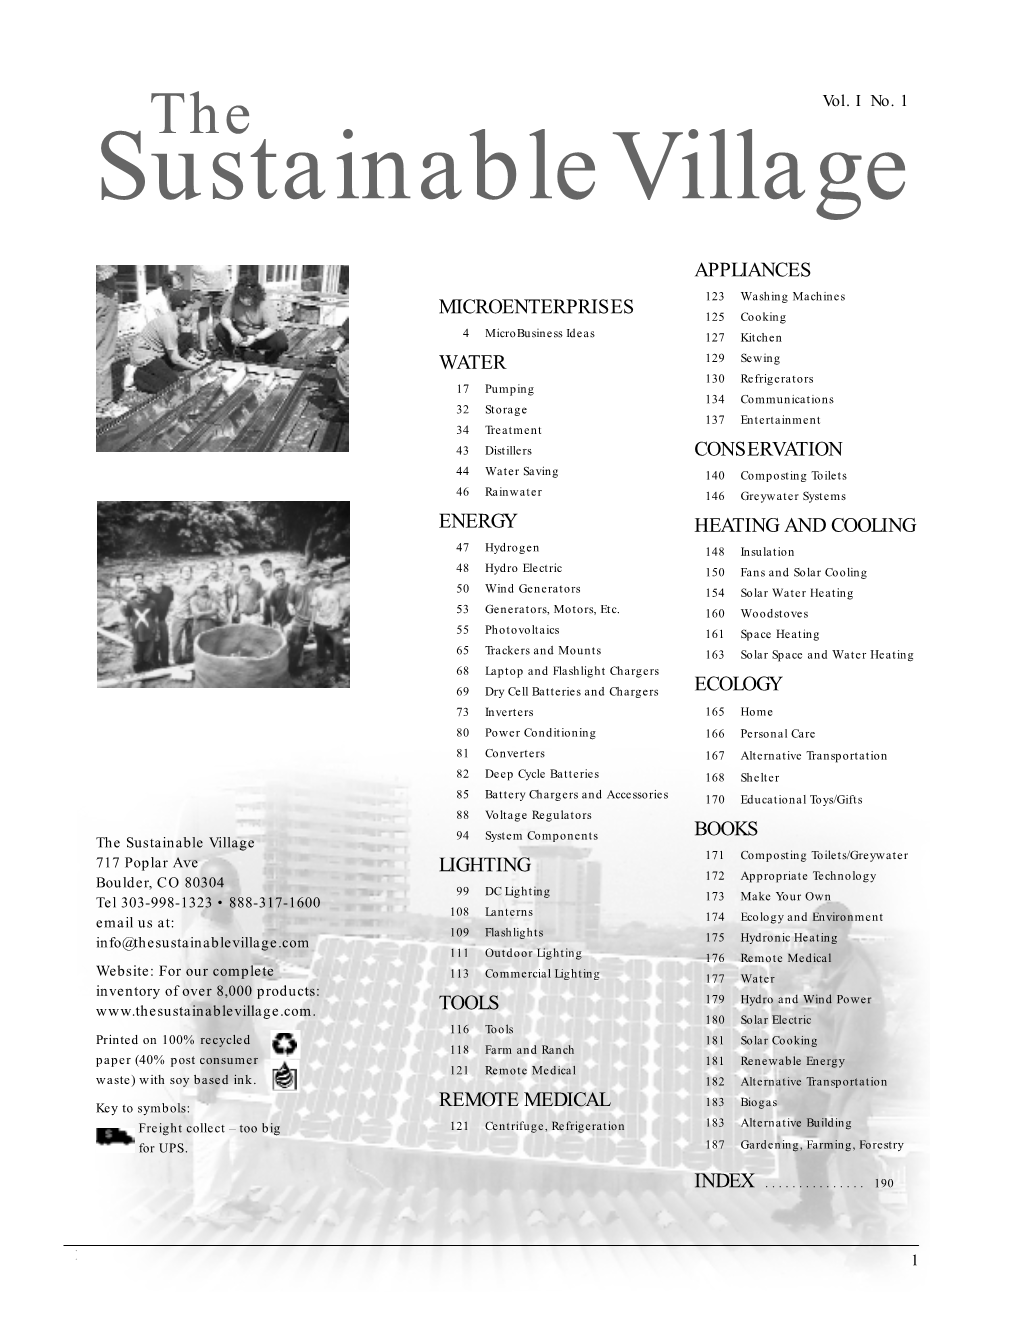 Sustainablevillage